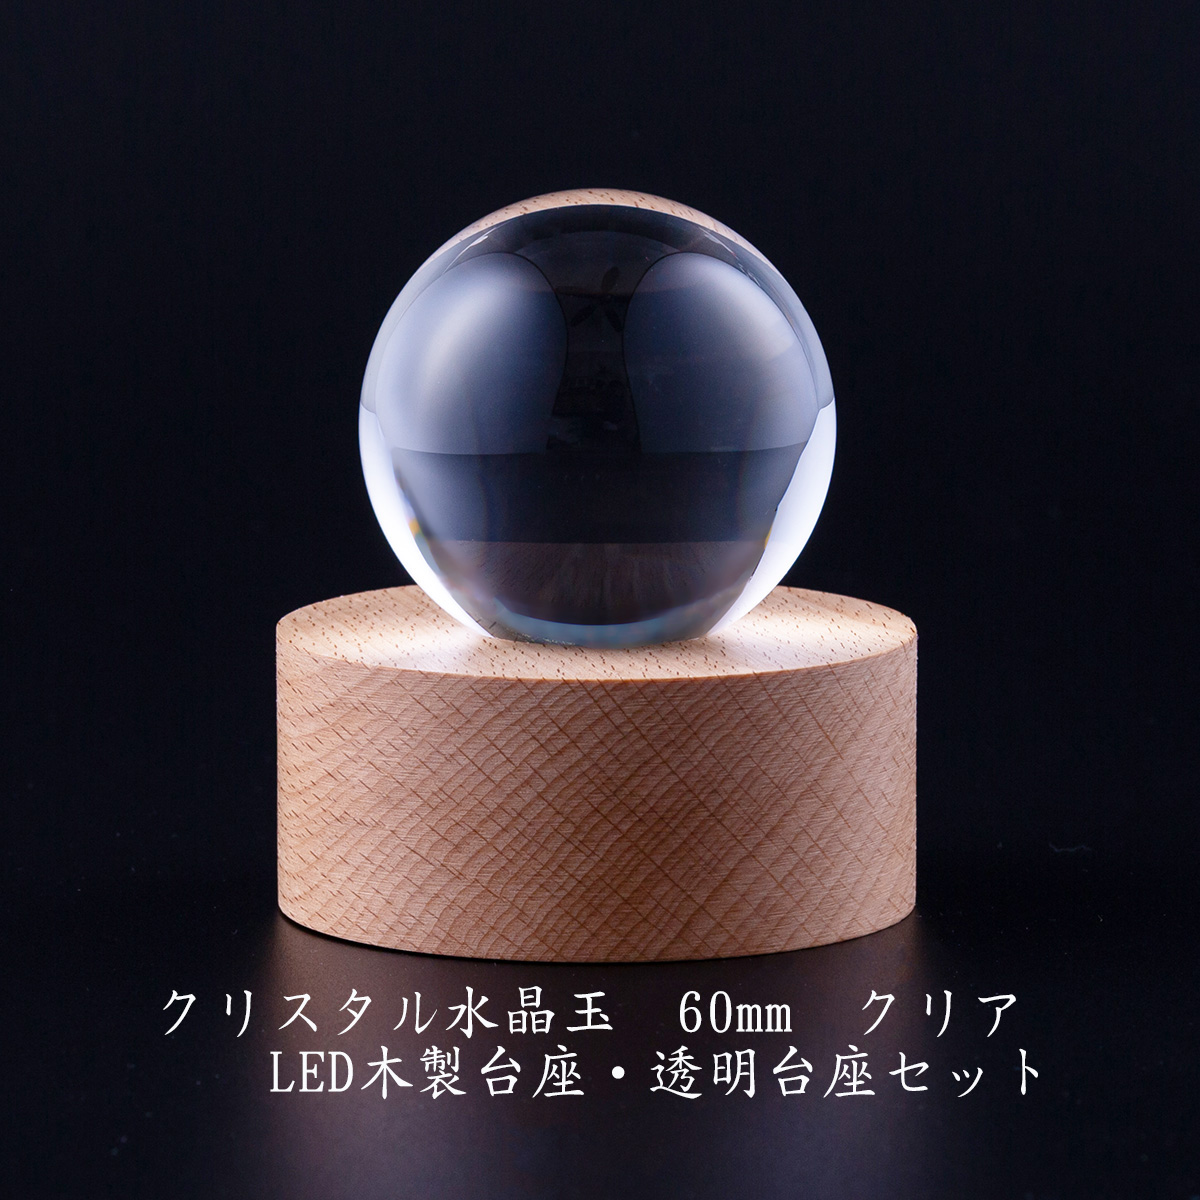 クリスタル 水晶玉 60mm クリア 透明台座 木製LED台座